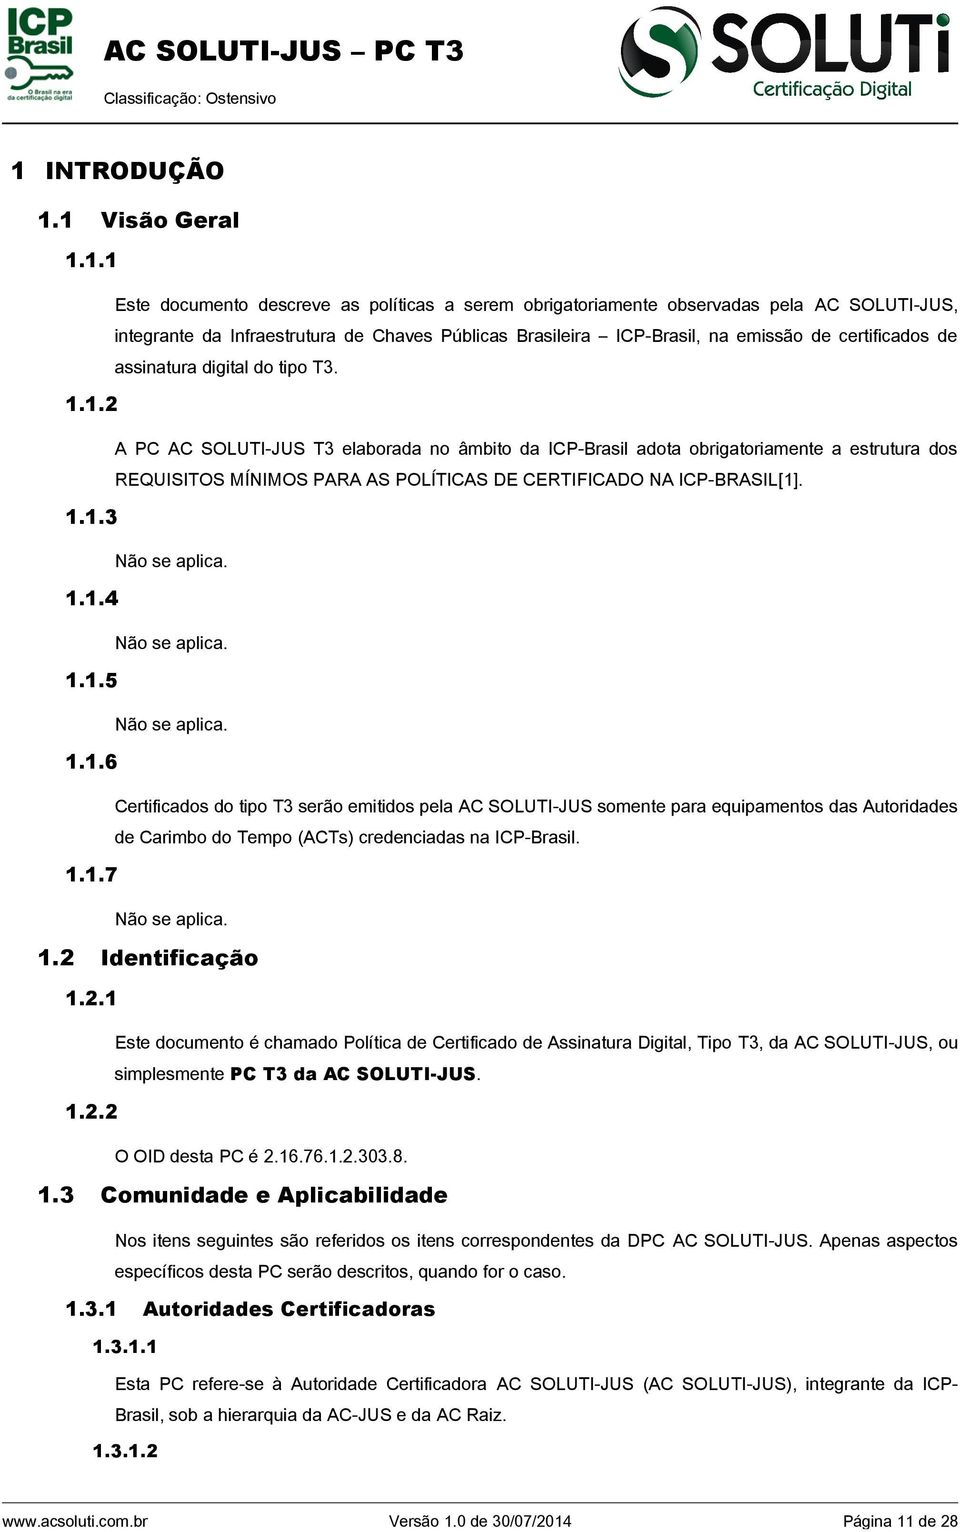 1.2 A PC AC SOLUTI-JUS T3 elaborada no âmbito da ICP-Brasil adota obrigatoriamente a estrutura dos REQUISITOS MÍNIMOS PARA AS POLÍTICAS DE CERTIFICADO NA ICP-BRASIL[1]. 1.1.3 Não se aplica. 1.1.4 Não se aplica.